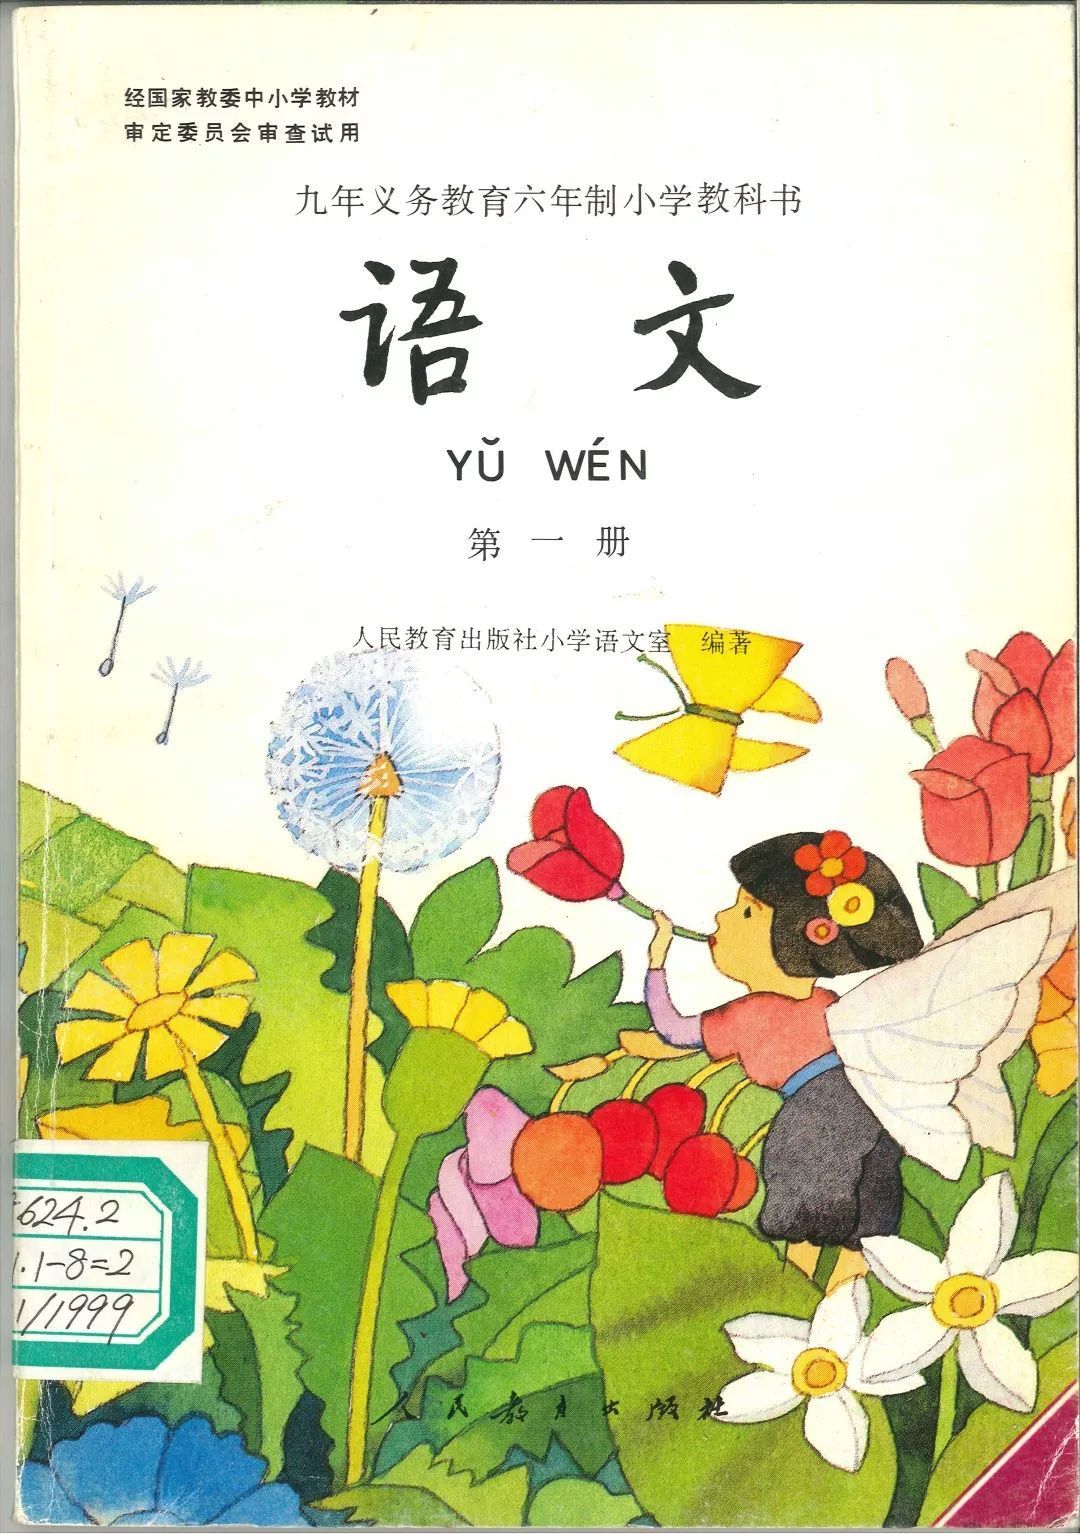 这是1995年版小学语文第一册的封面,在春天漫山野花盛开的季节,还有